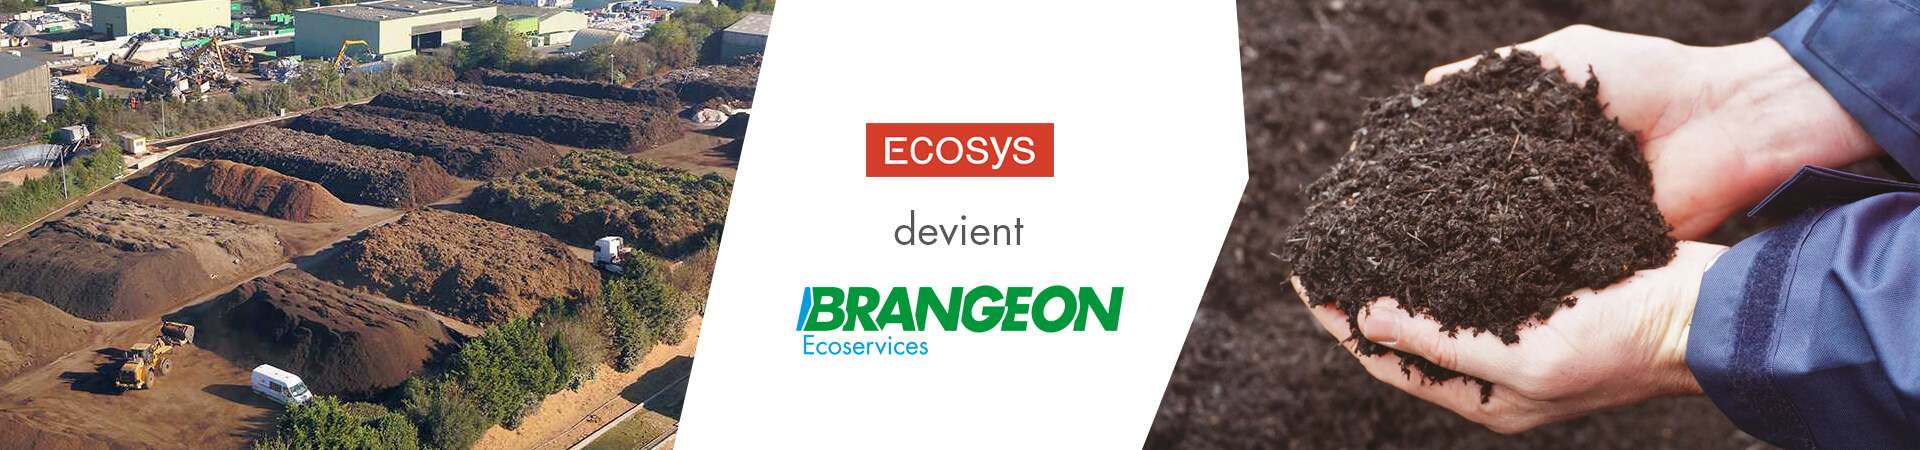 Slider-Ecosys-devient-Brangeon-ecoservices